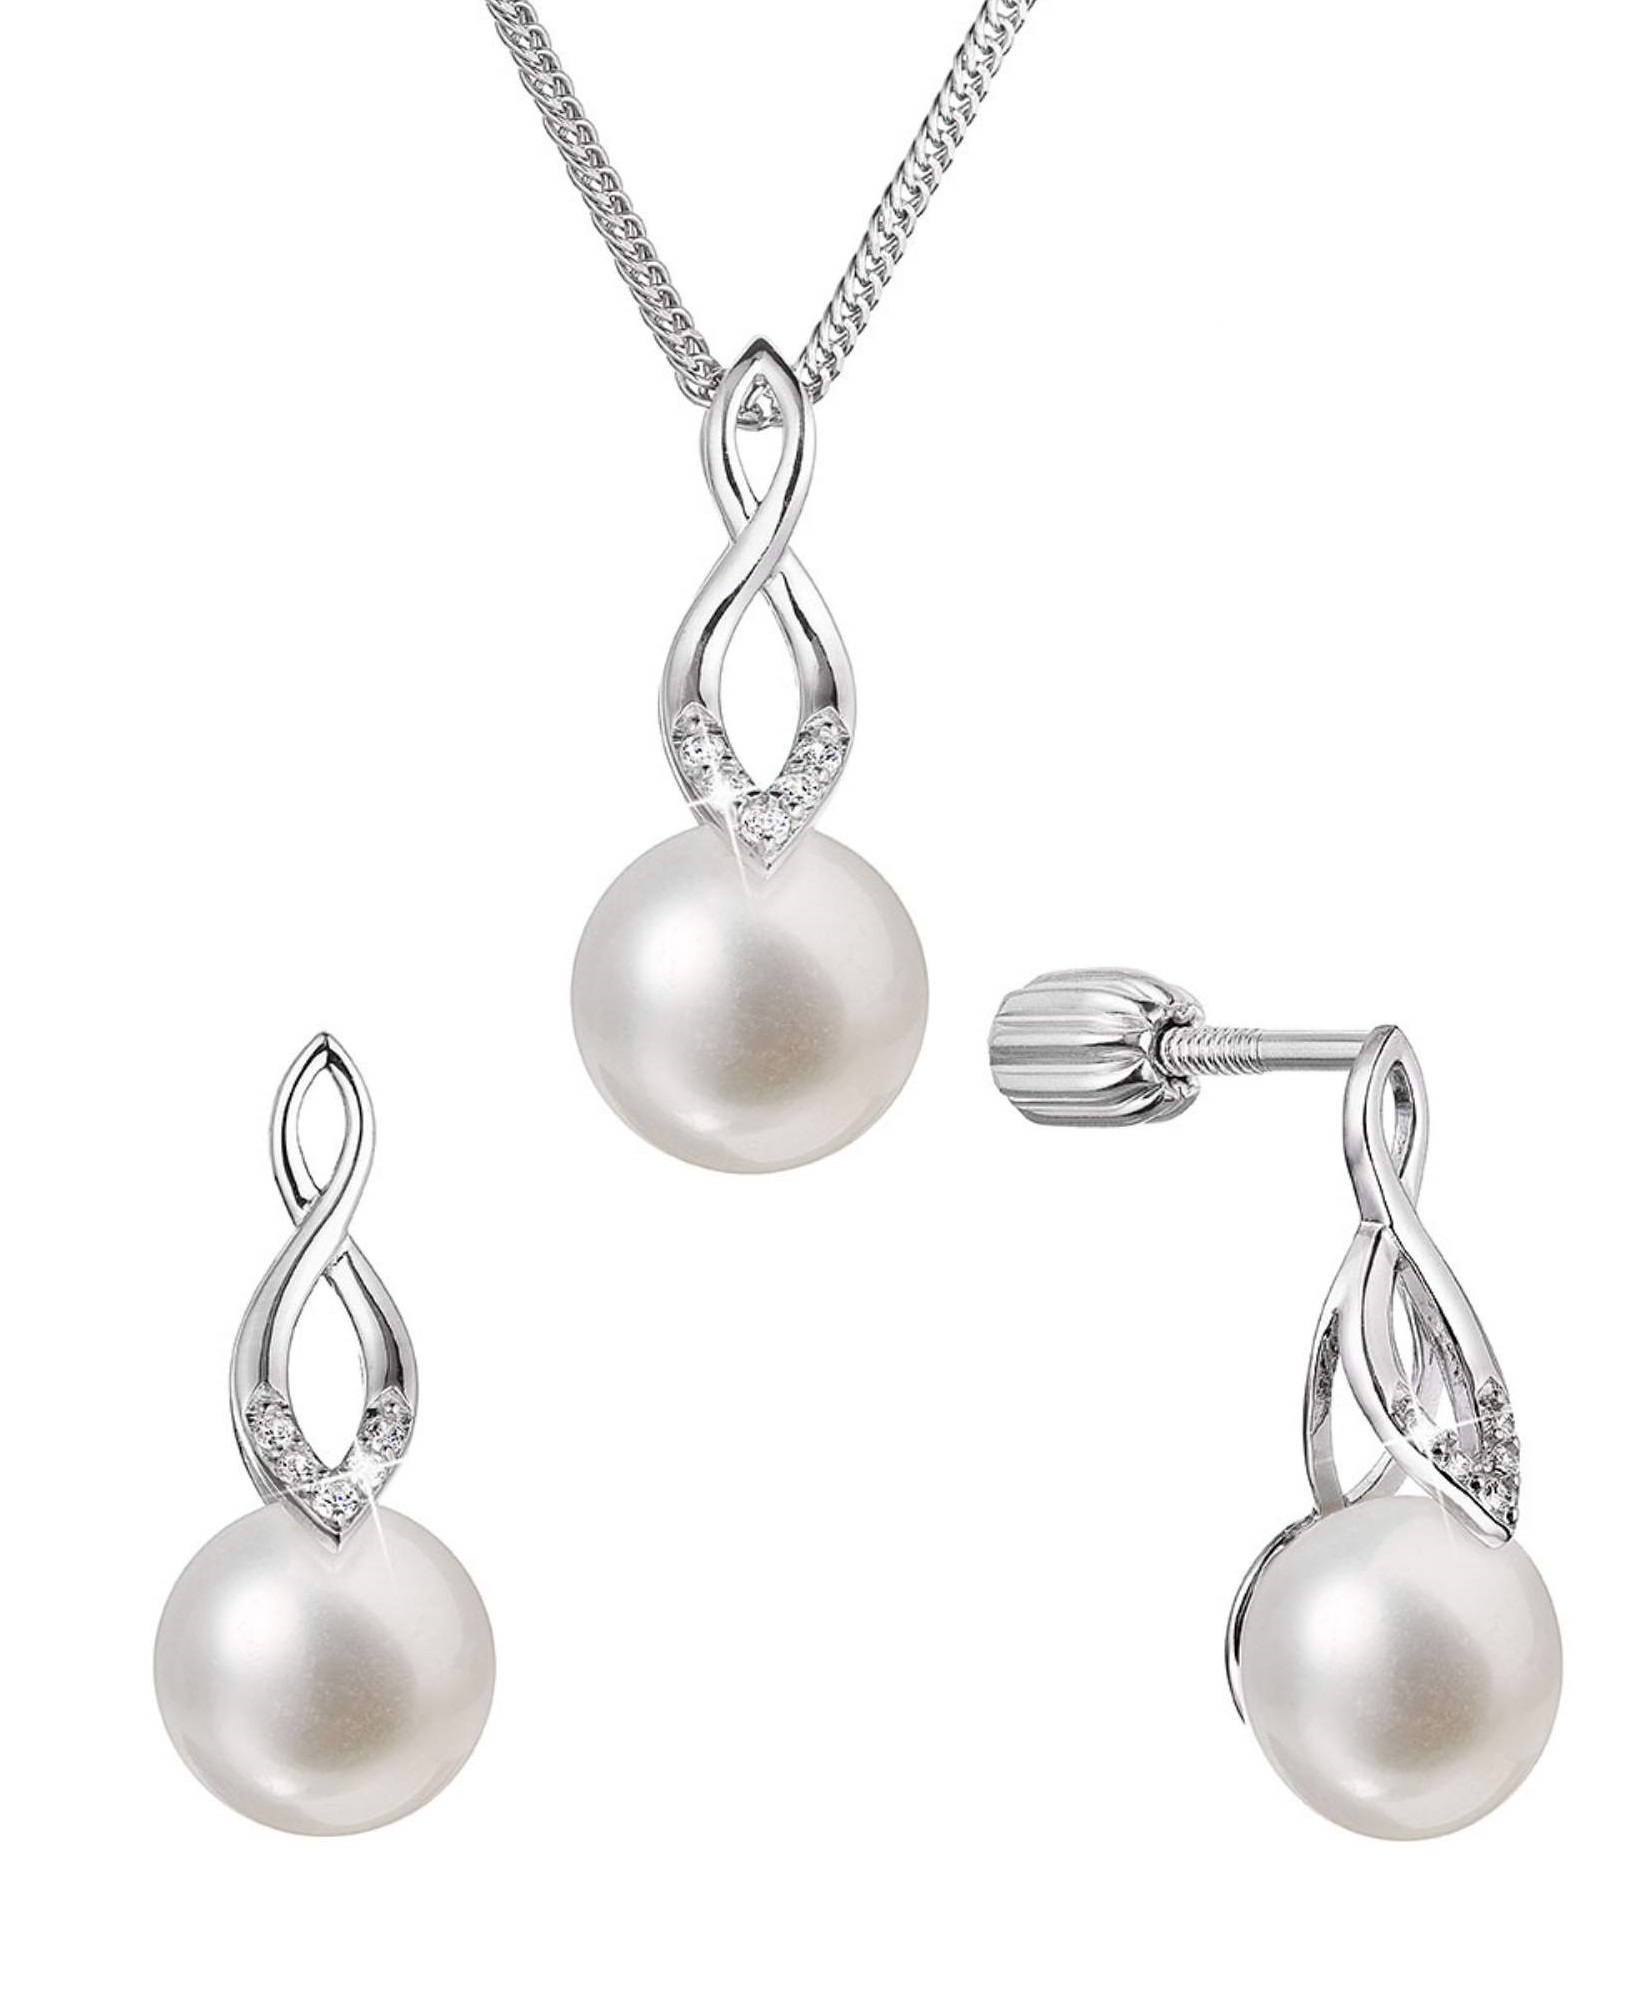 Evolution Group Souprava stříbrných šperků se zirkony a pravými perlami 29052.1B (náušnice, řetízek, přívěsek)